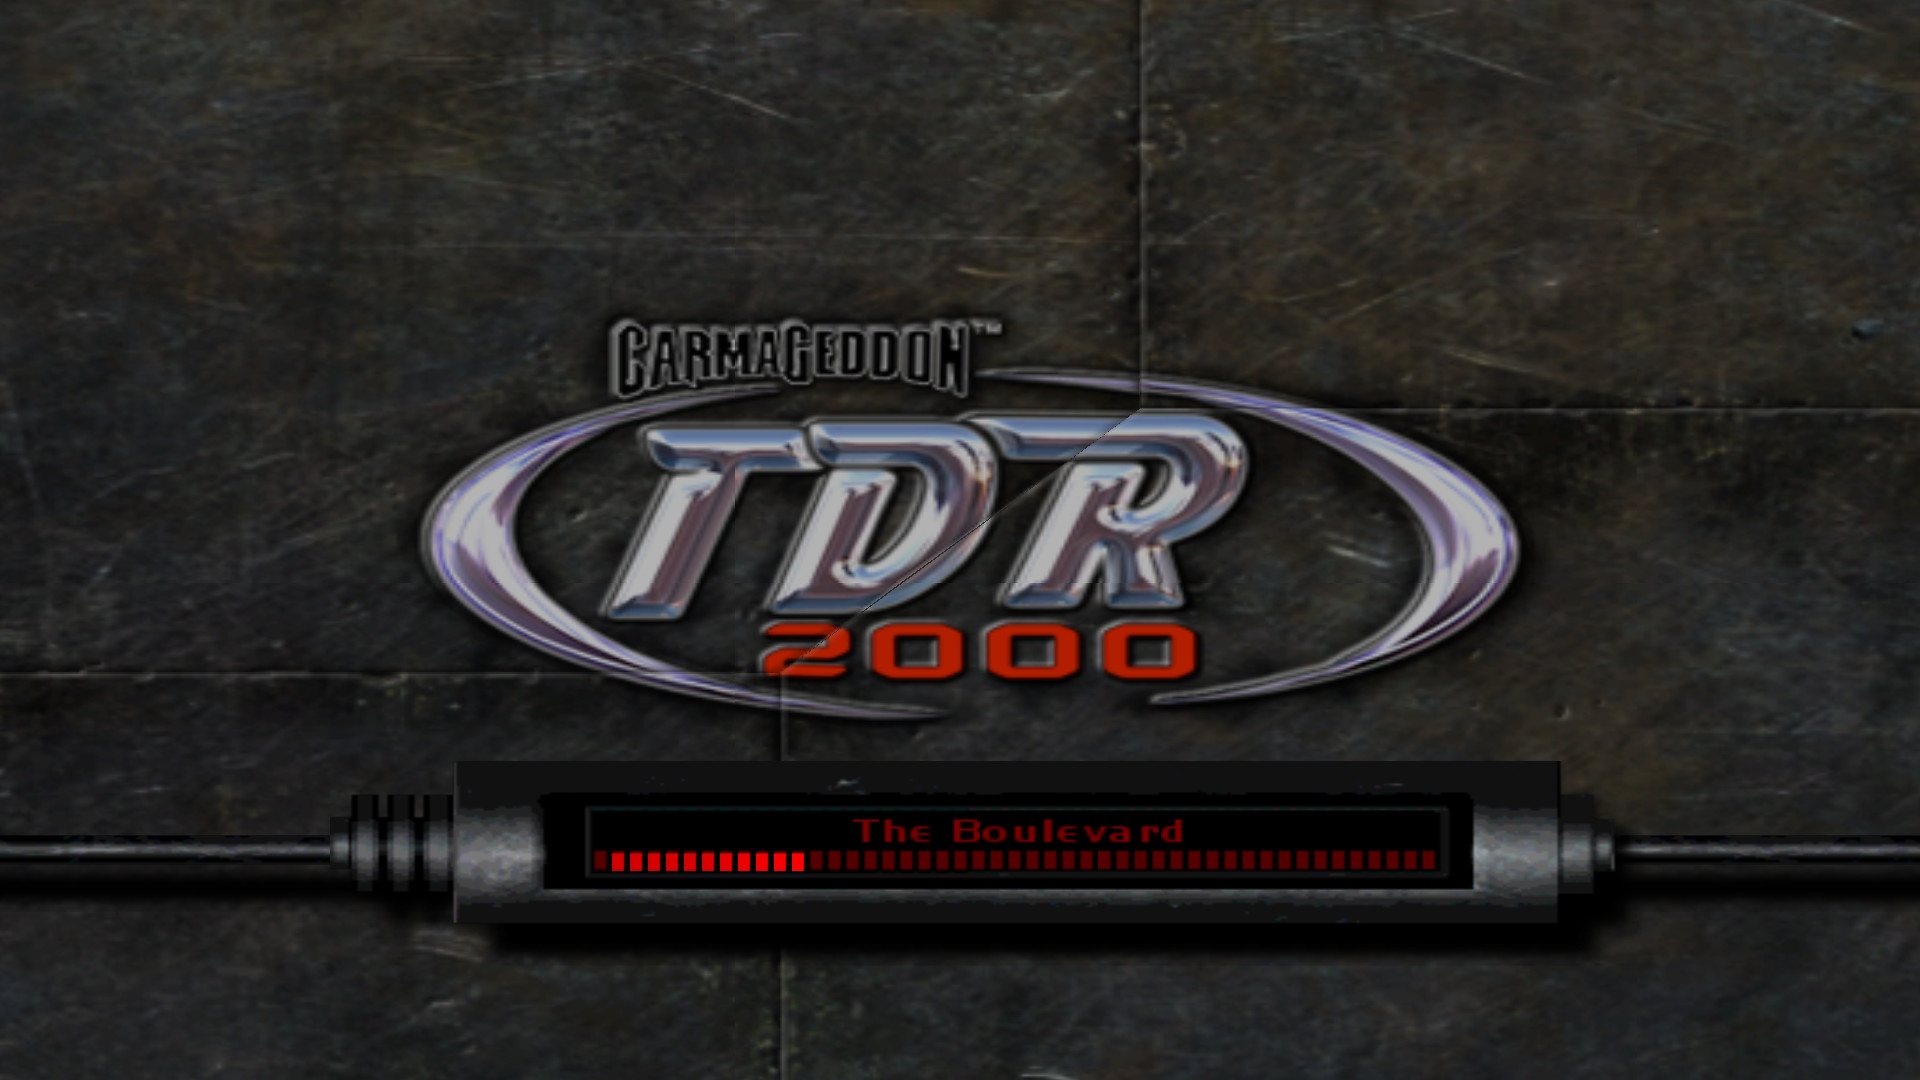 Carmageddon TDR 2000 Steam Gift 3.13 $